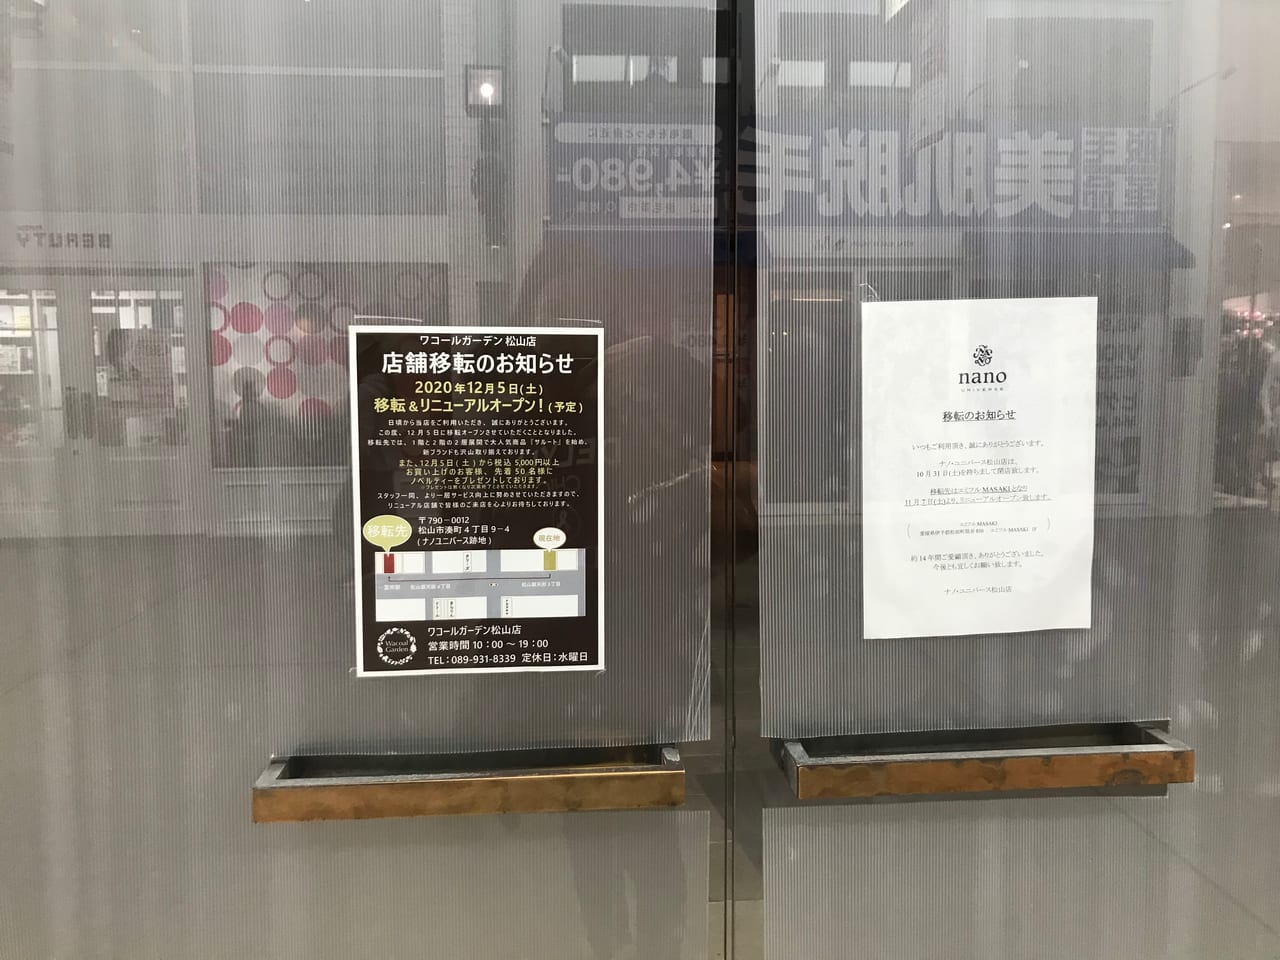 松山市 銀天街のワコールガーデン松山店が年12月5日にナノユニバース跡に移転オープン 号外net 松山市 中予地方